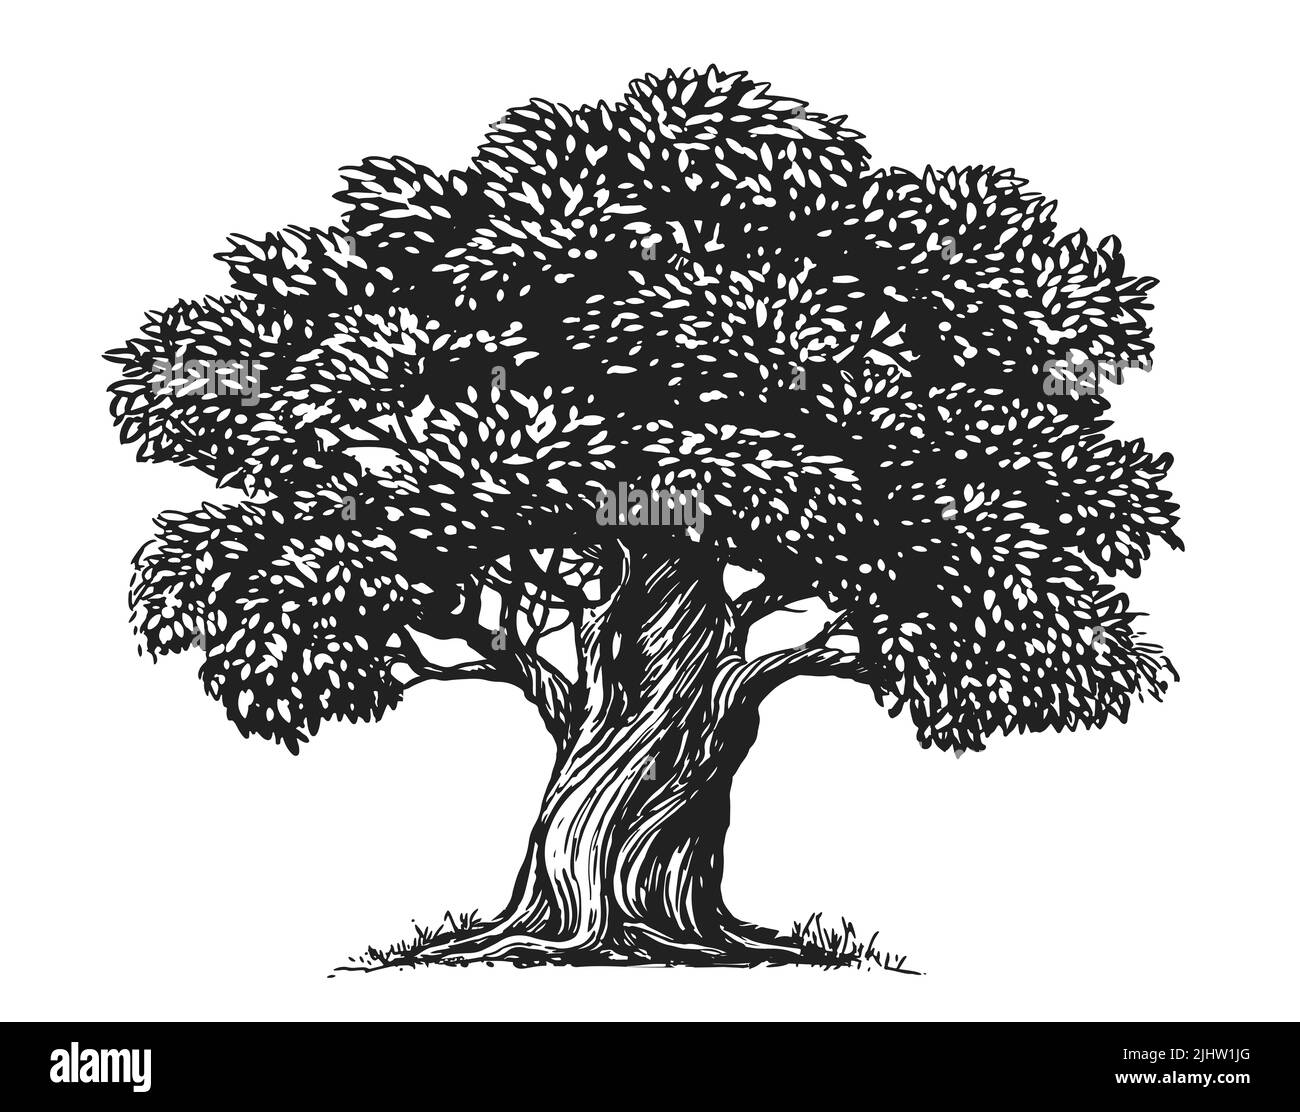 Skizze Olive Tree isoliert auf weißem Hintergrund. Handgezeichnete Abbildung. Vintage-Style Stockfoto